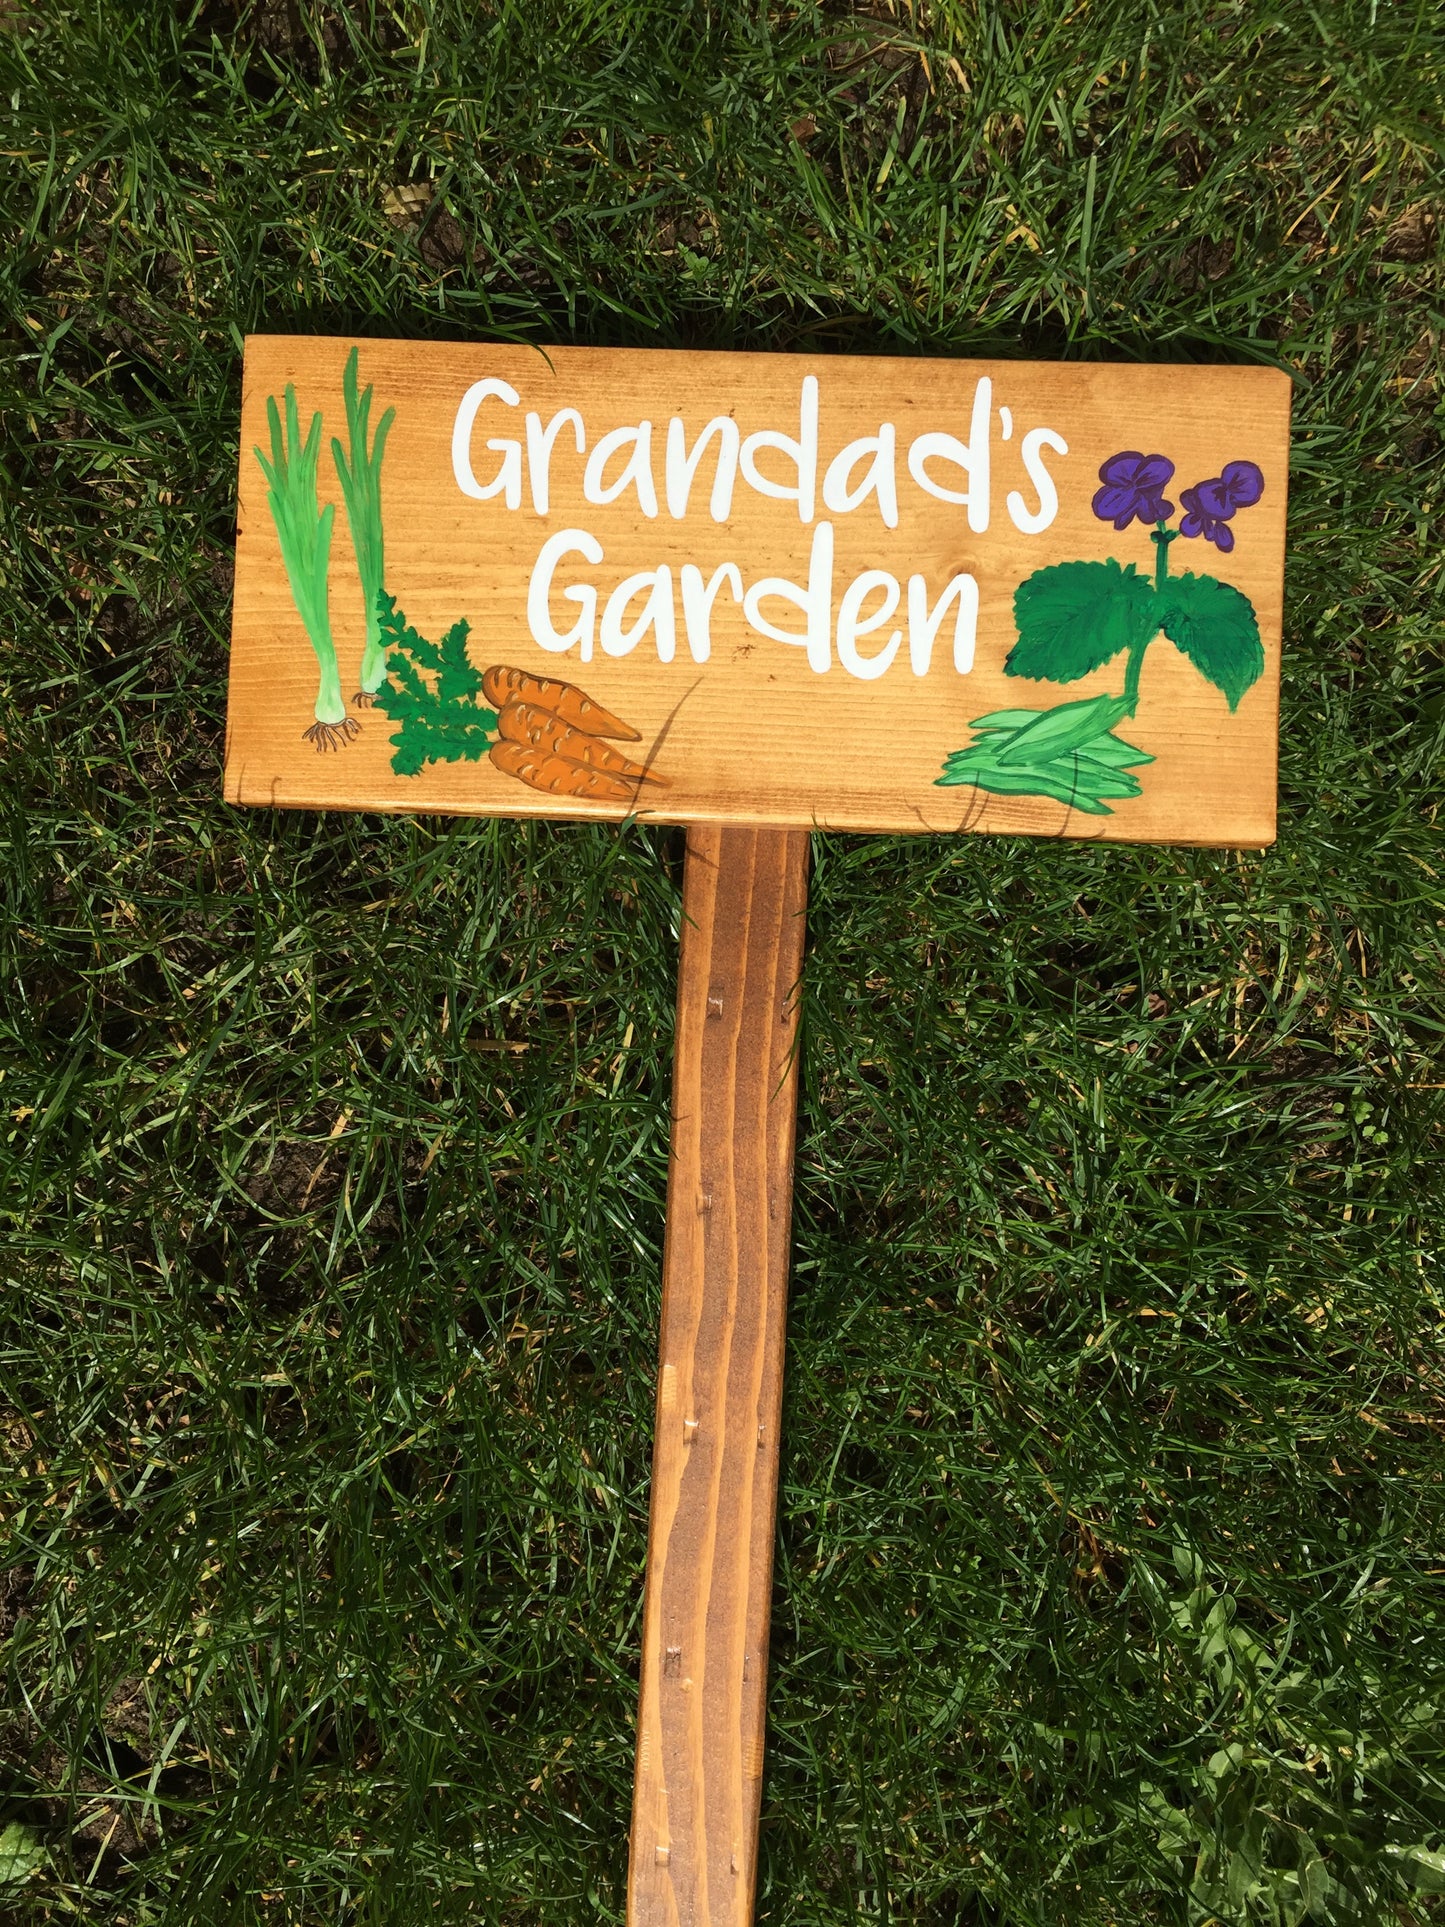 Large Vegetable Garden Sign